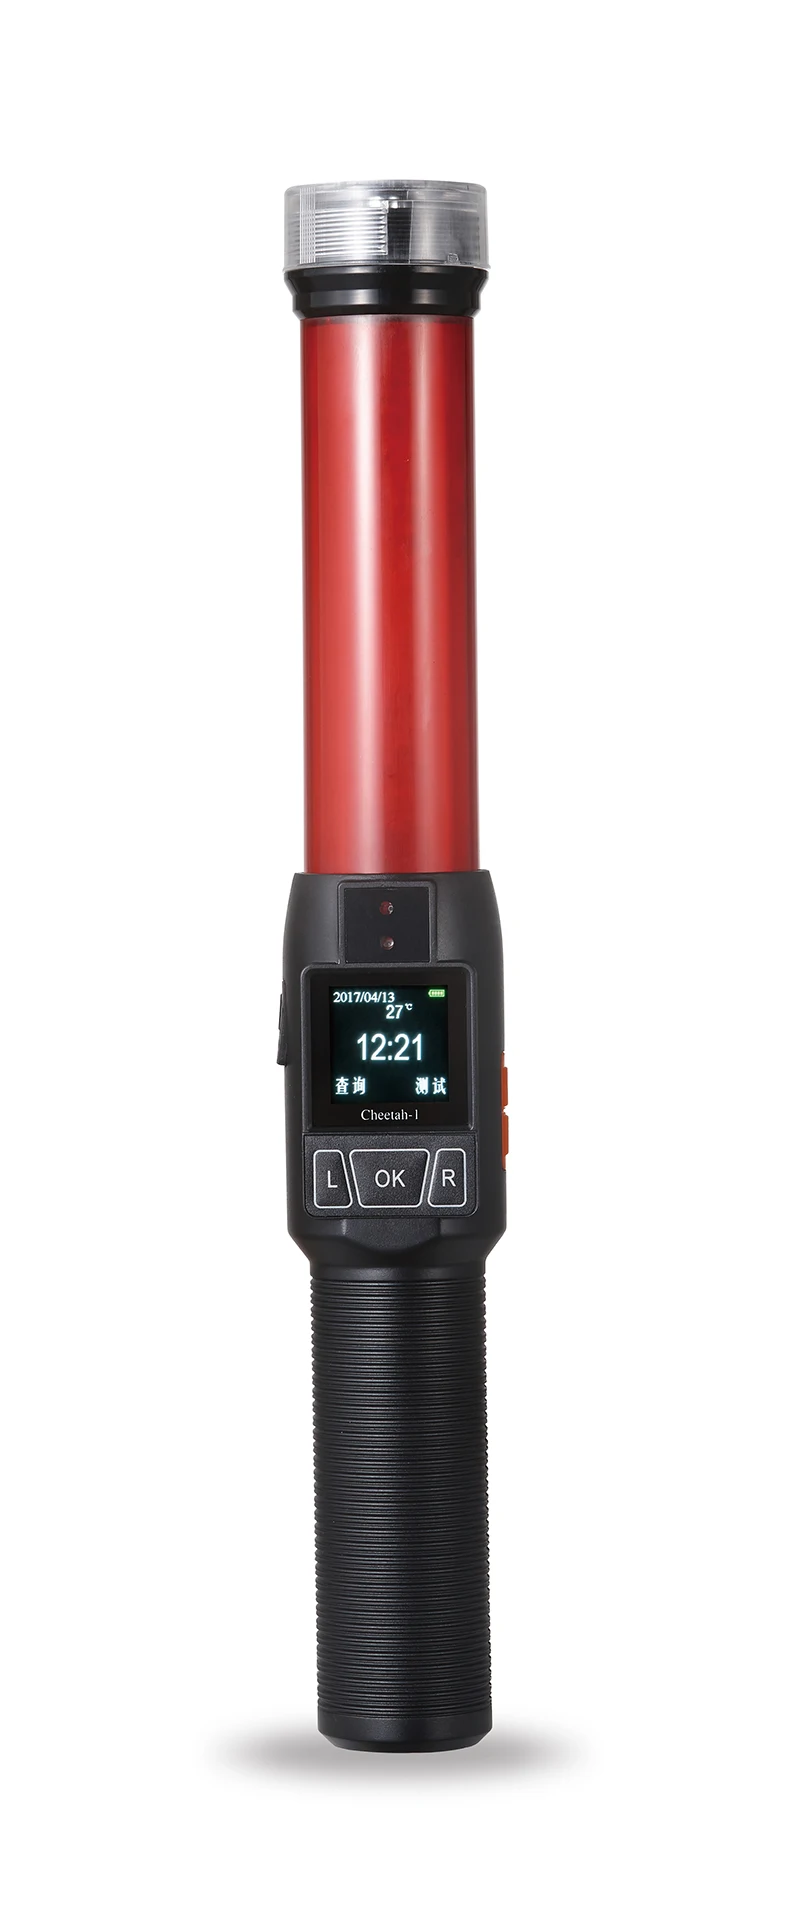 JCKP-SK01 полиции красного и черного цветов цифровой измеритель тест для быстрого спирта дыхания анализа